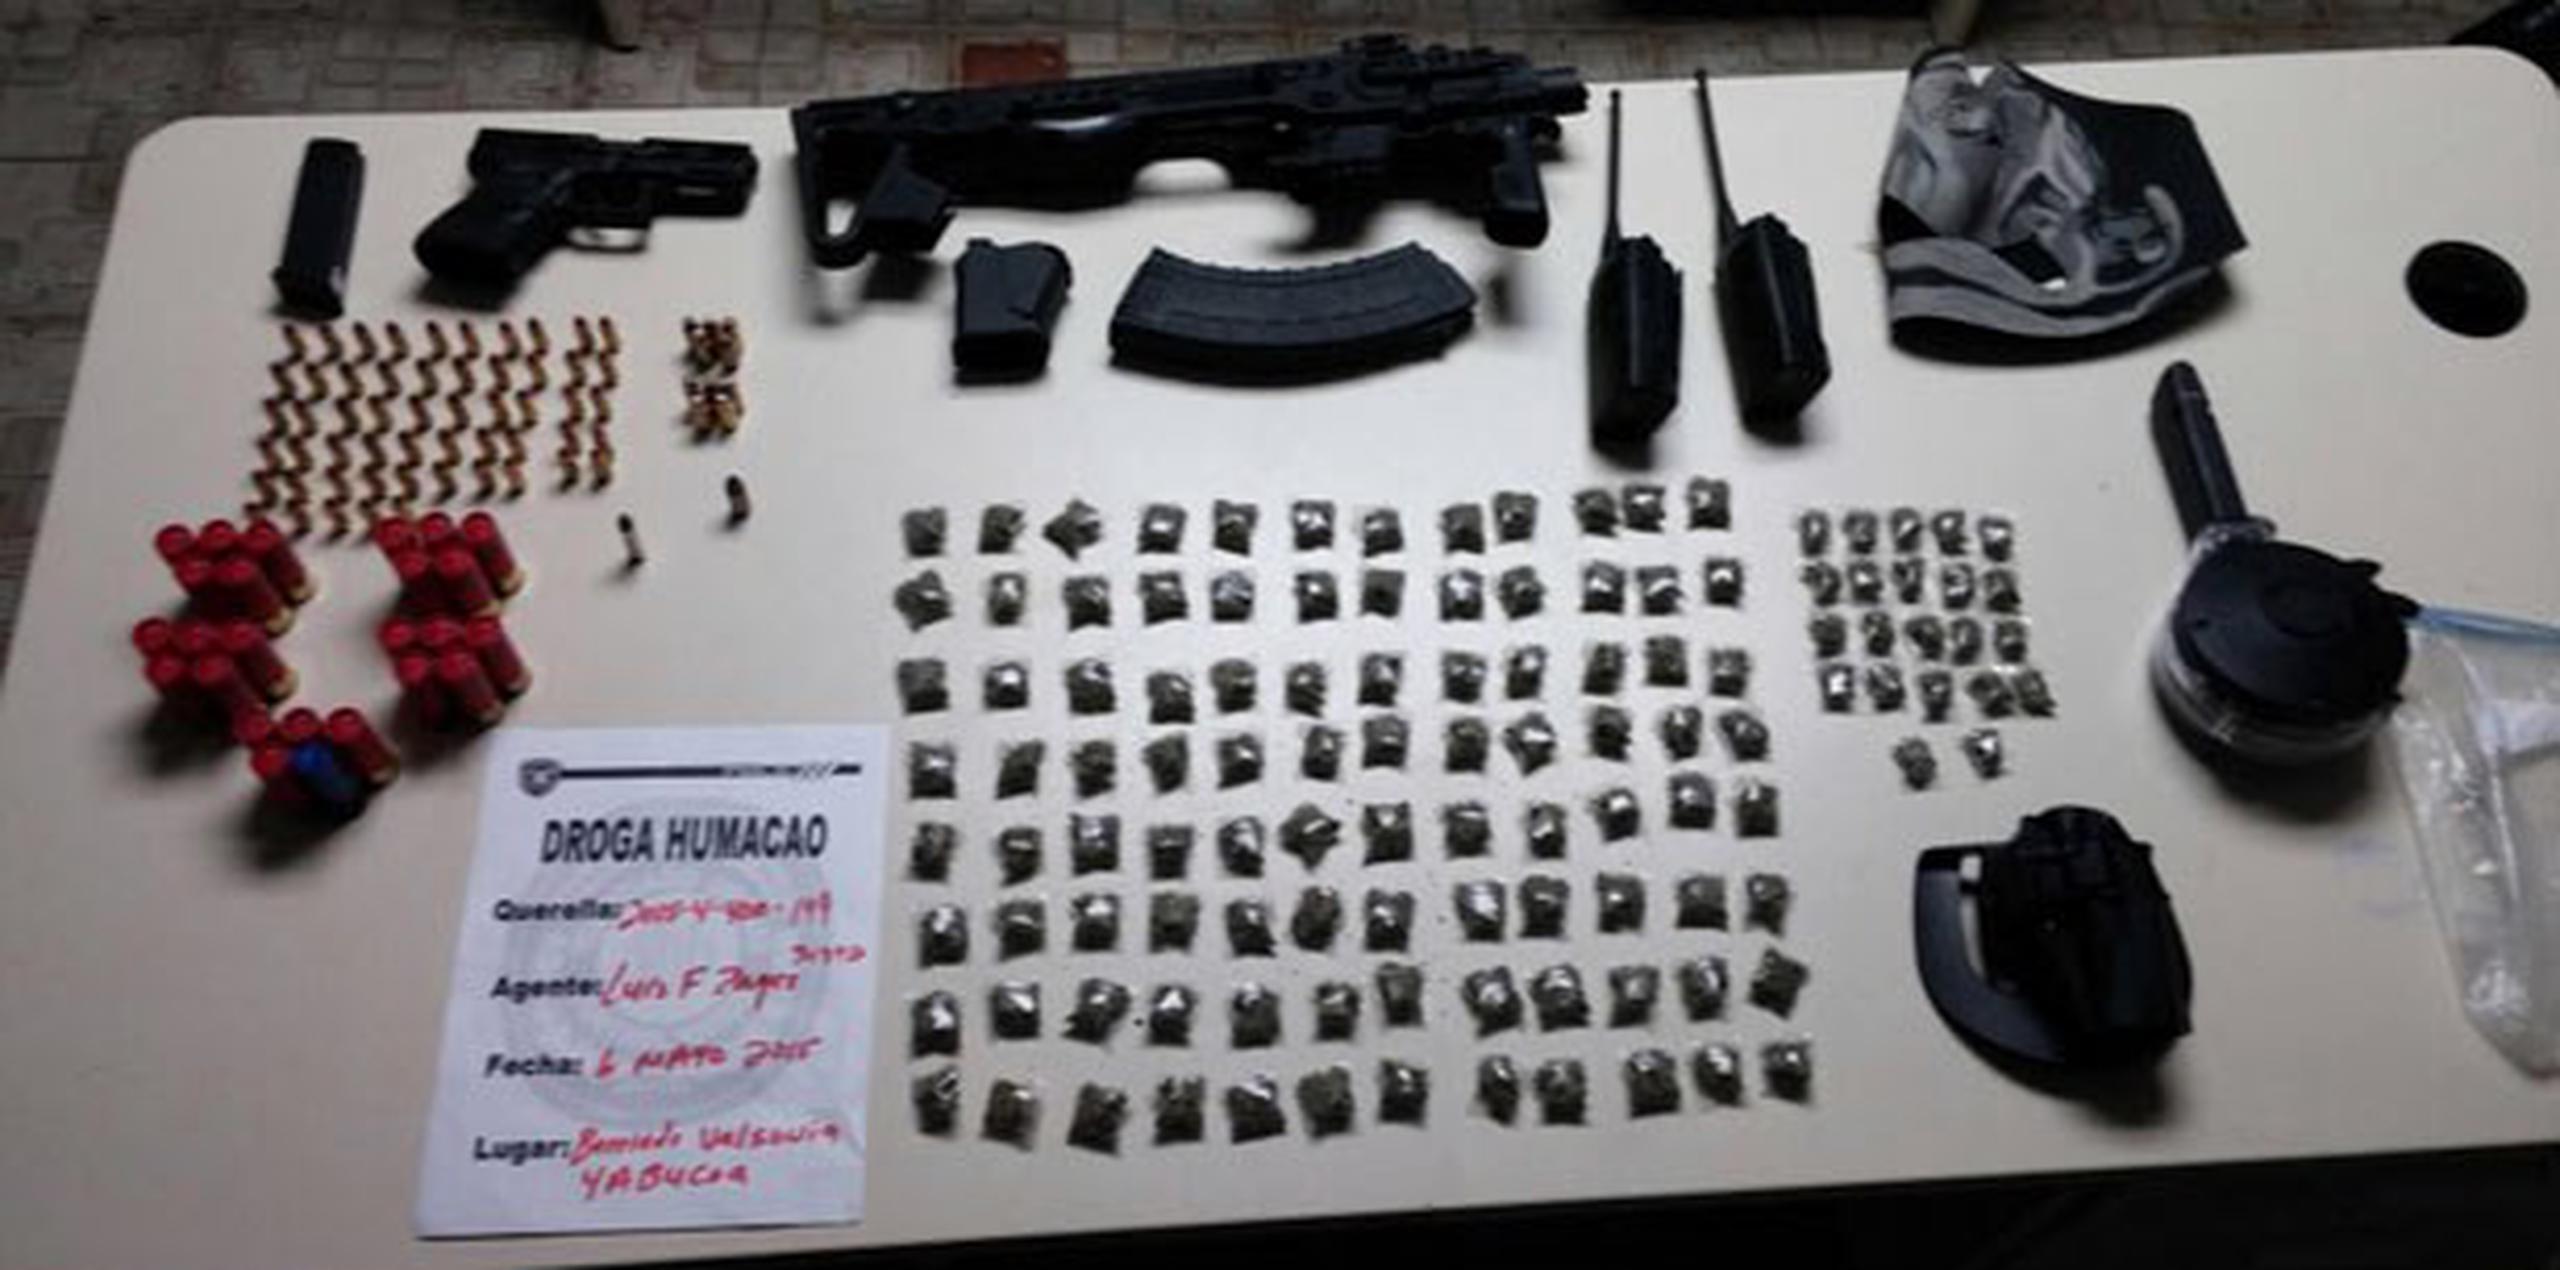 Drogas, armas y municiones ocupadas por la Policía en Yabucoa. (Suministrada)